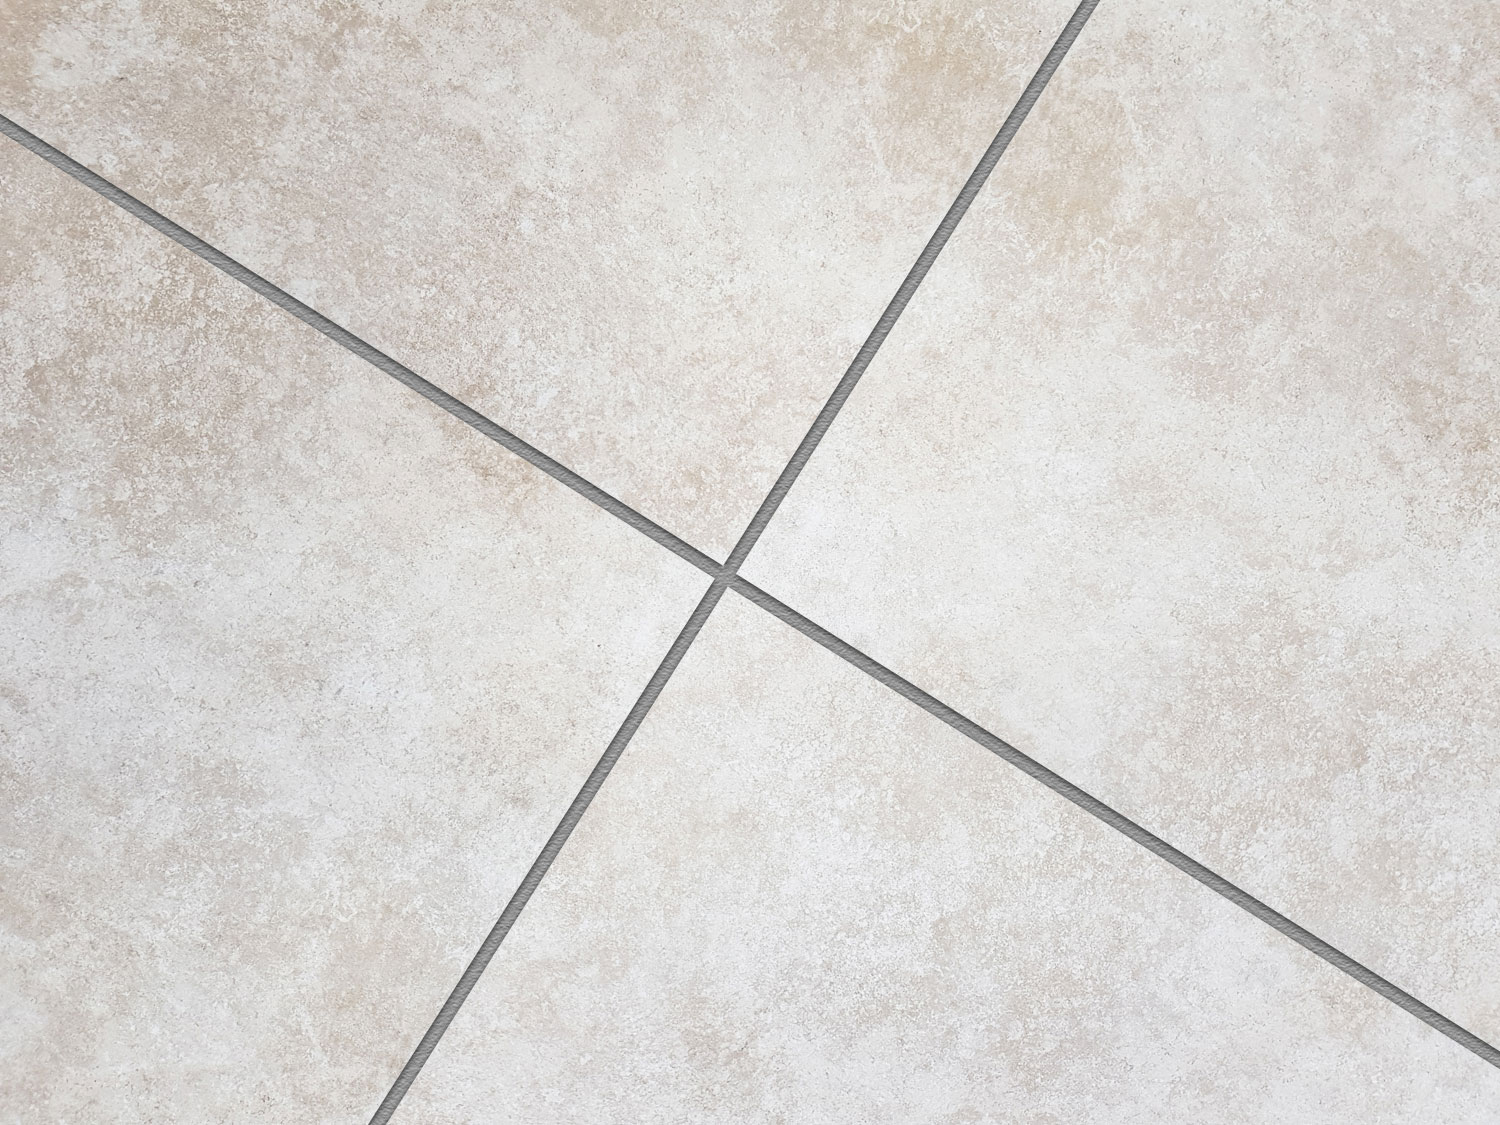 Pluto Rock Ceramic Floor Tile close up